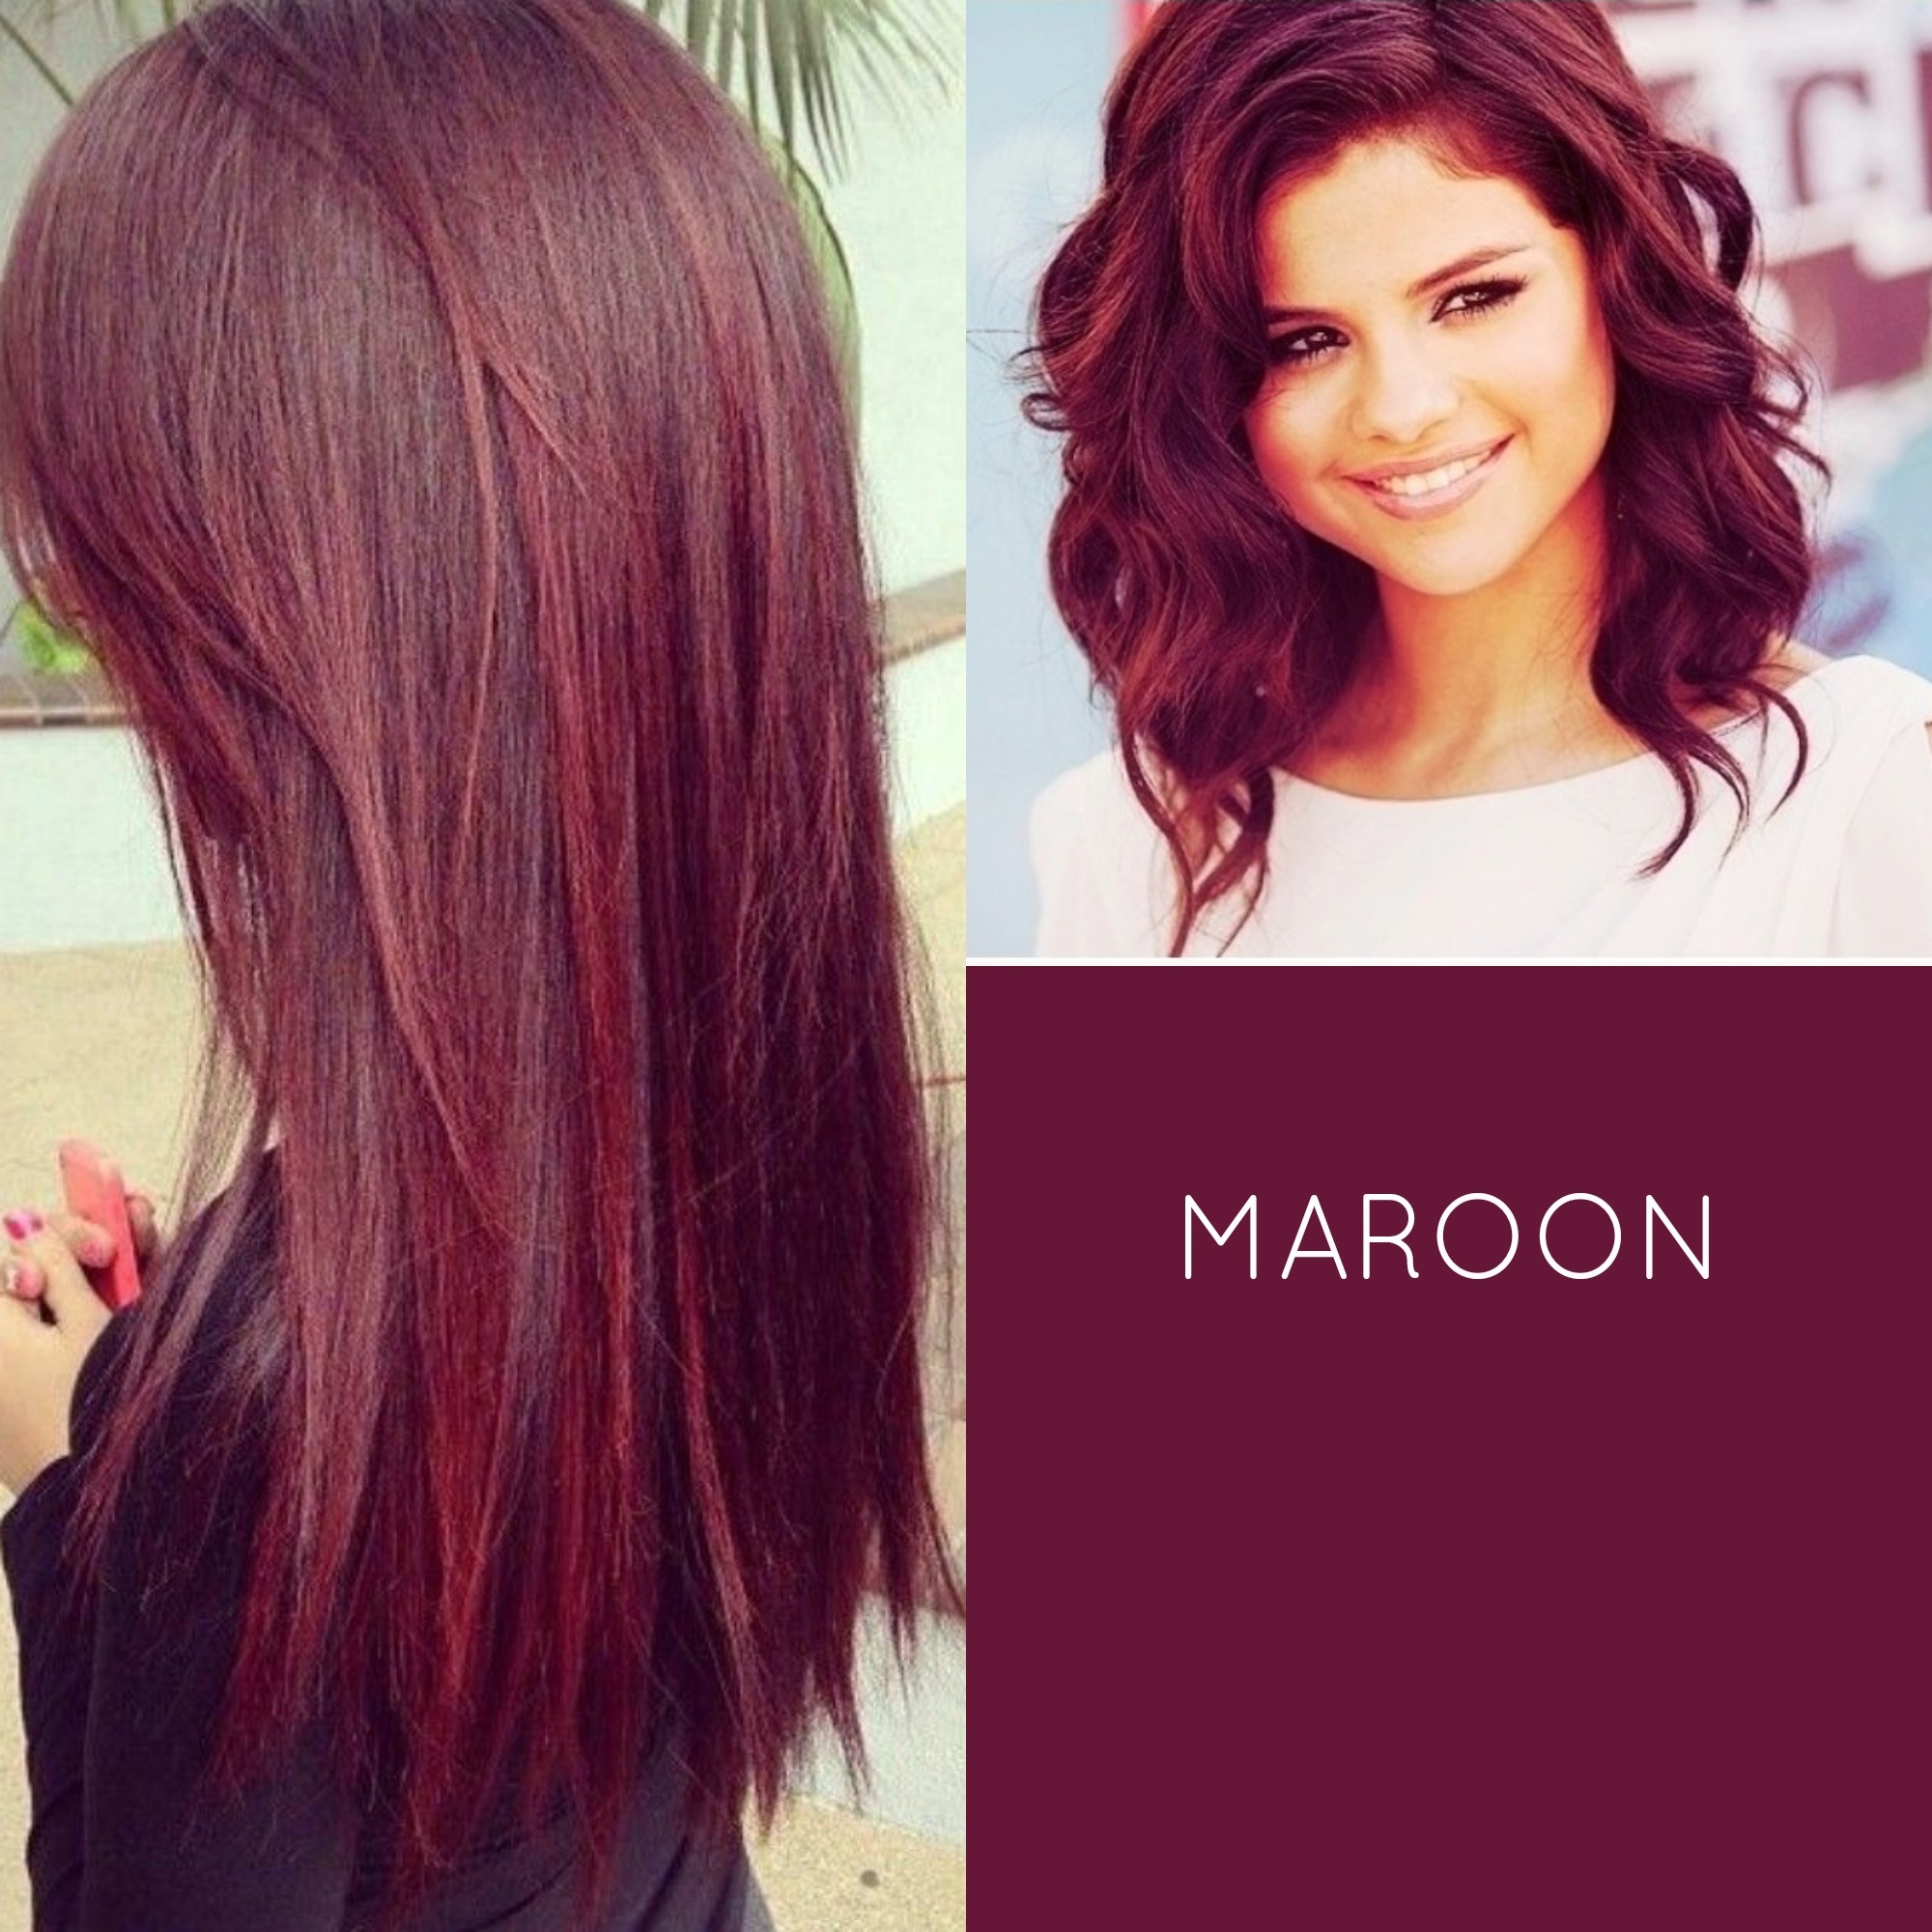 Maroon Hair Dye